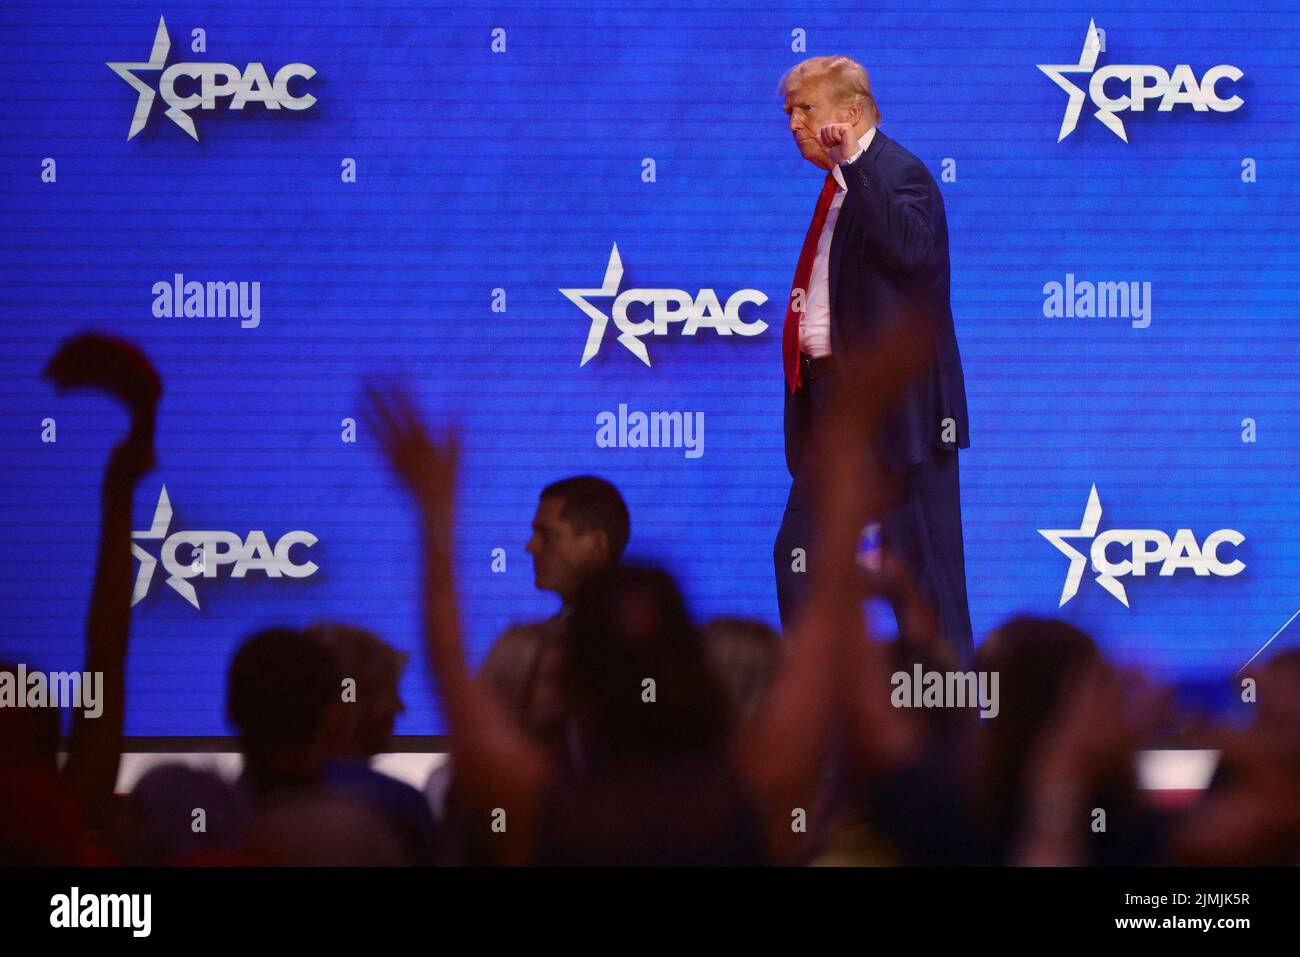 El ex presidente estadounidense Donald Trump sale del escenario después de hablar en la Conferencia de Acción Política Conservadora (CPAC) en Dallas, Texas, EE.UU., el 6 de agosto de 2022. REUTERS/Brian Snyder Foto de stock